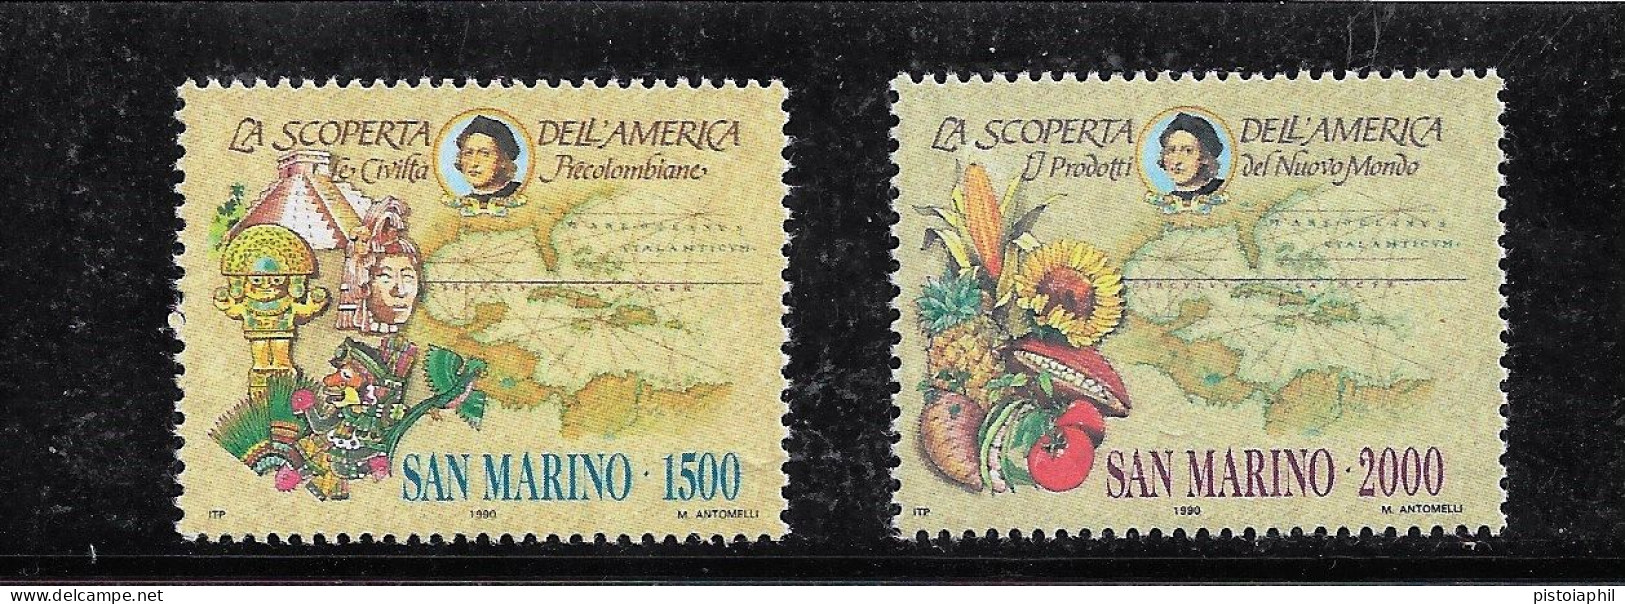 CELEBRAZIONI COLOMBIANE (San Marino) 1990 MNH** - Christopher Columbus